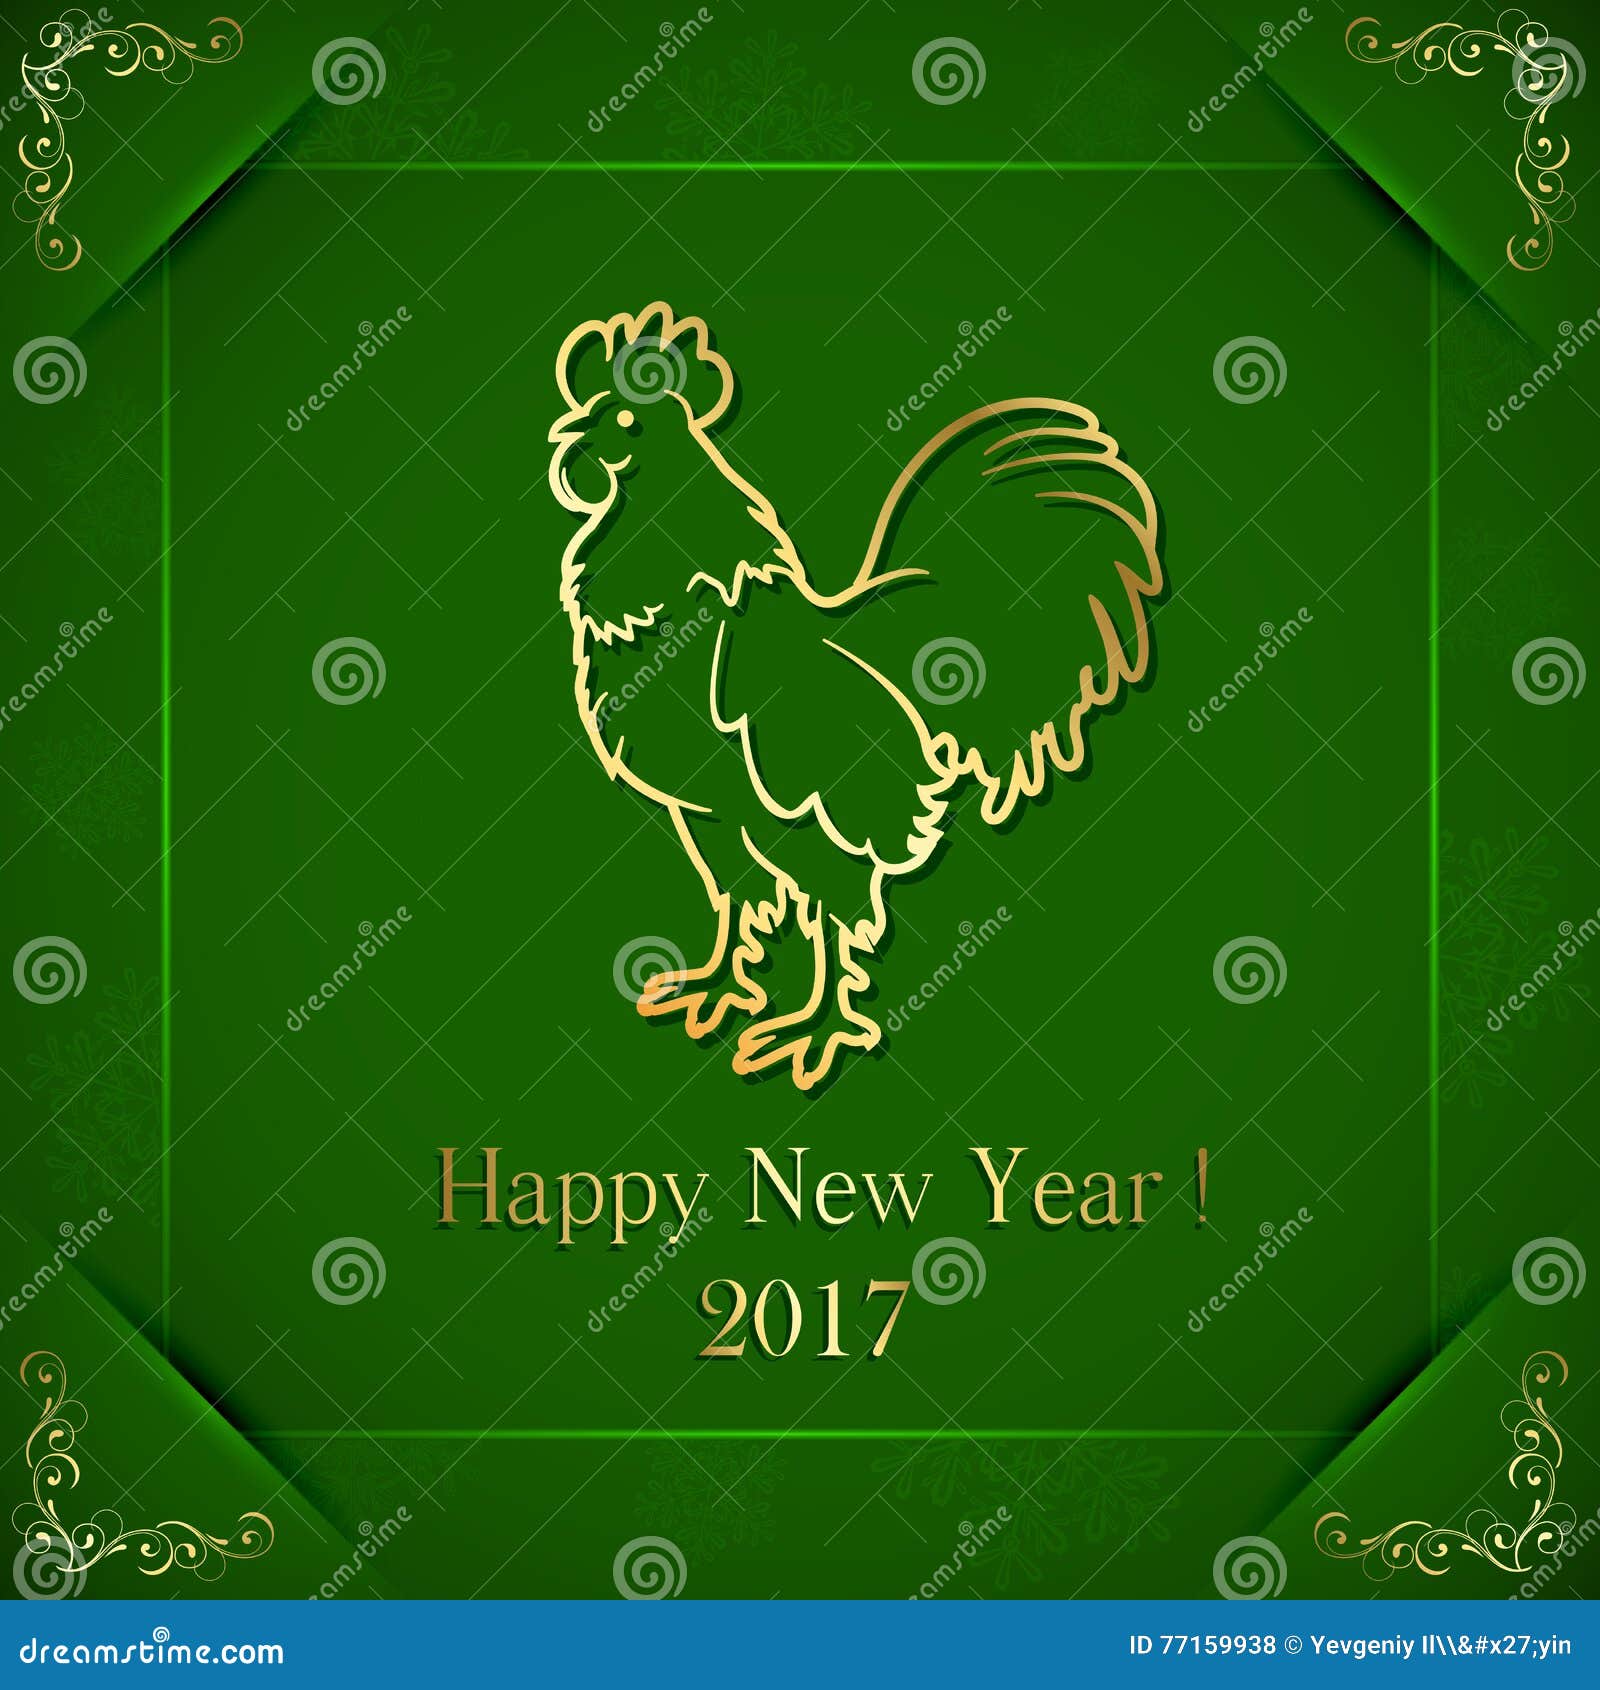 Coq d'or sur le fond vert avec les éléments fleuris, symbole de la nouvelle année 2017, illustration